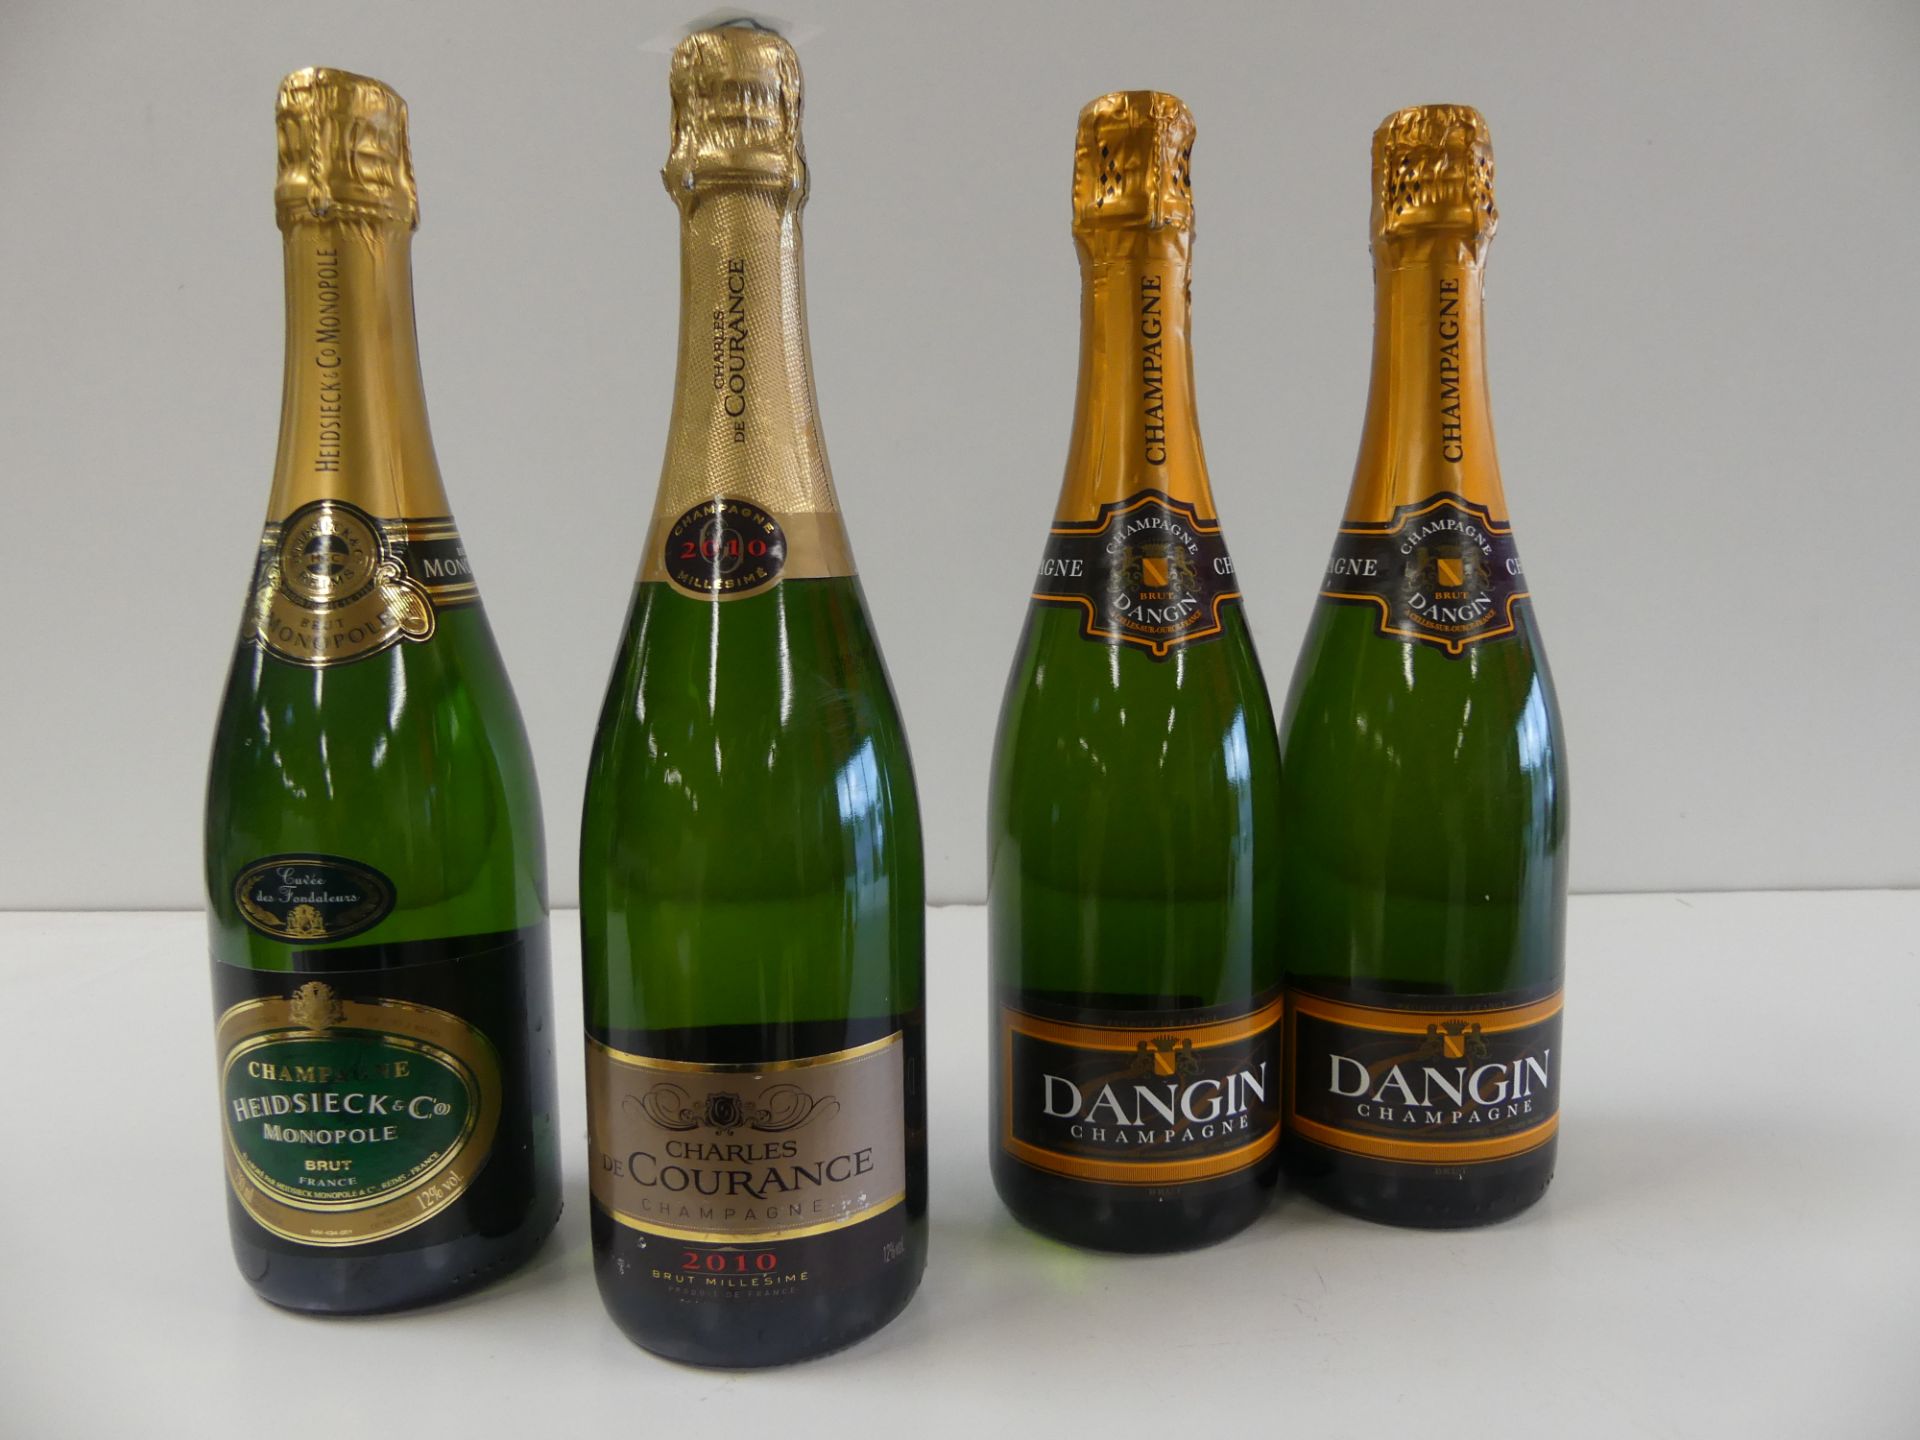 1 lot de 4 bouteilles : 2 Champagne Dangin Brut ; 1 Champagne Charles de Courance [...]